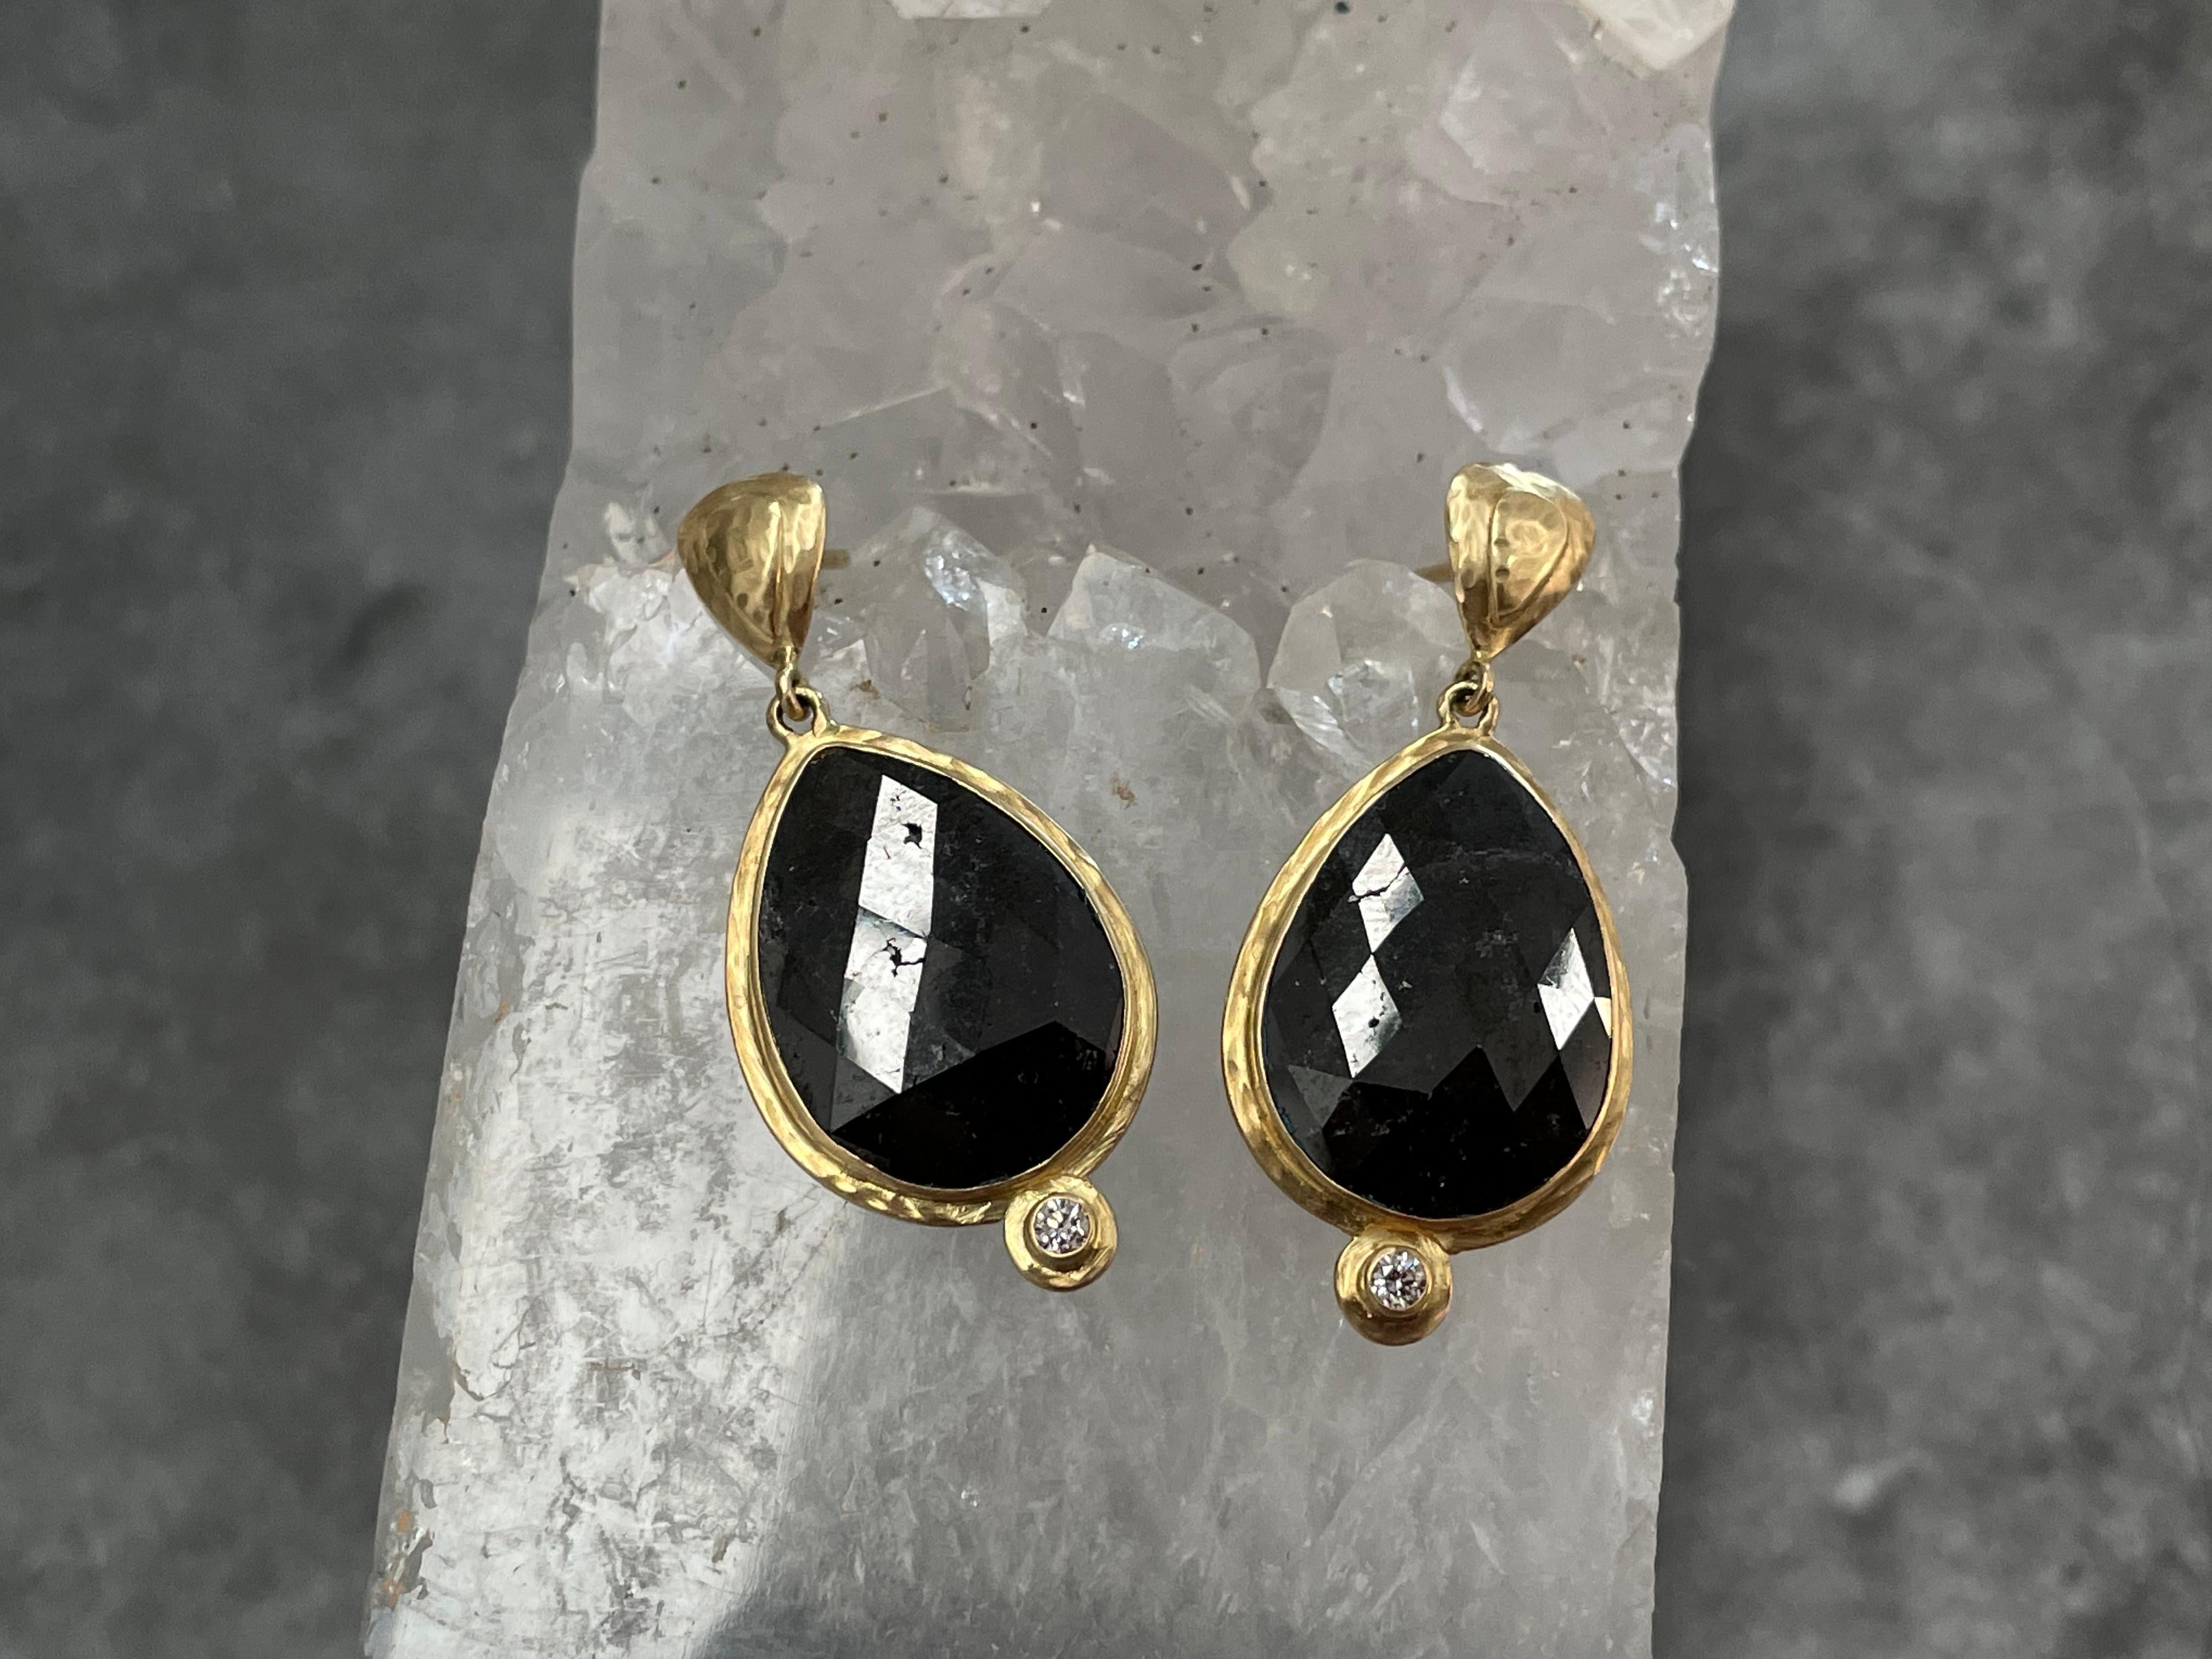 Steven Battelle 11.2 Carats Large Black Diamond 18K Gold Post Earrings For Sale 1